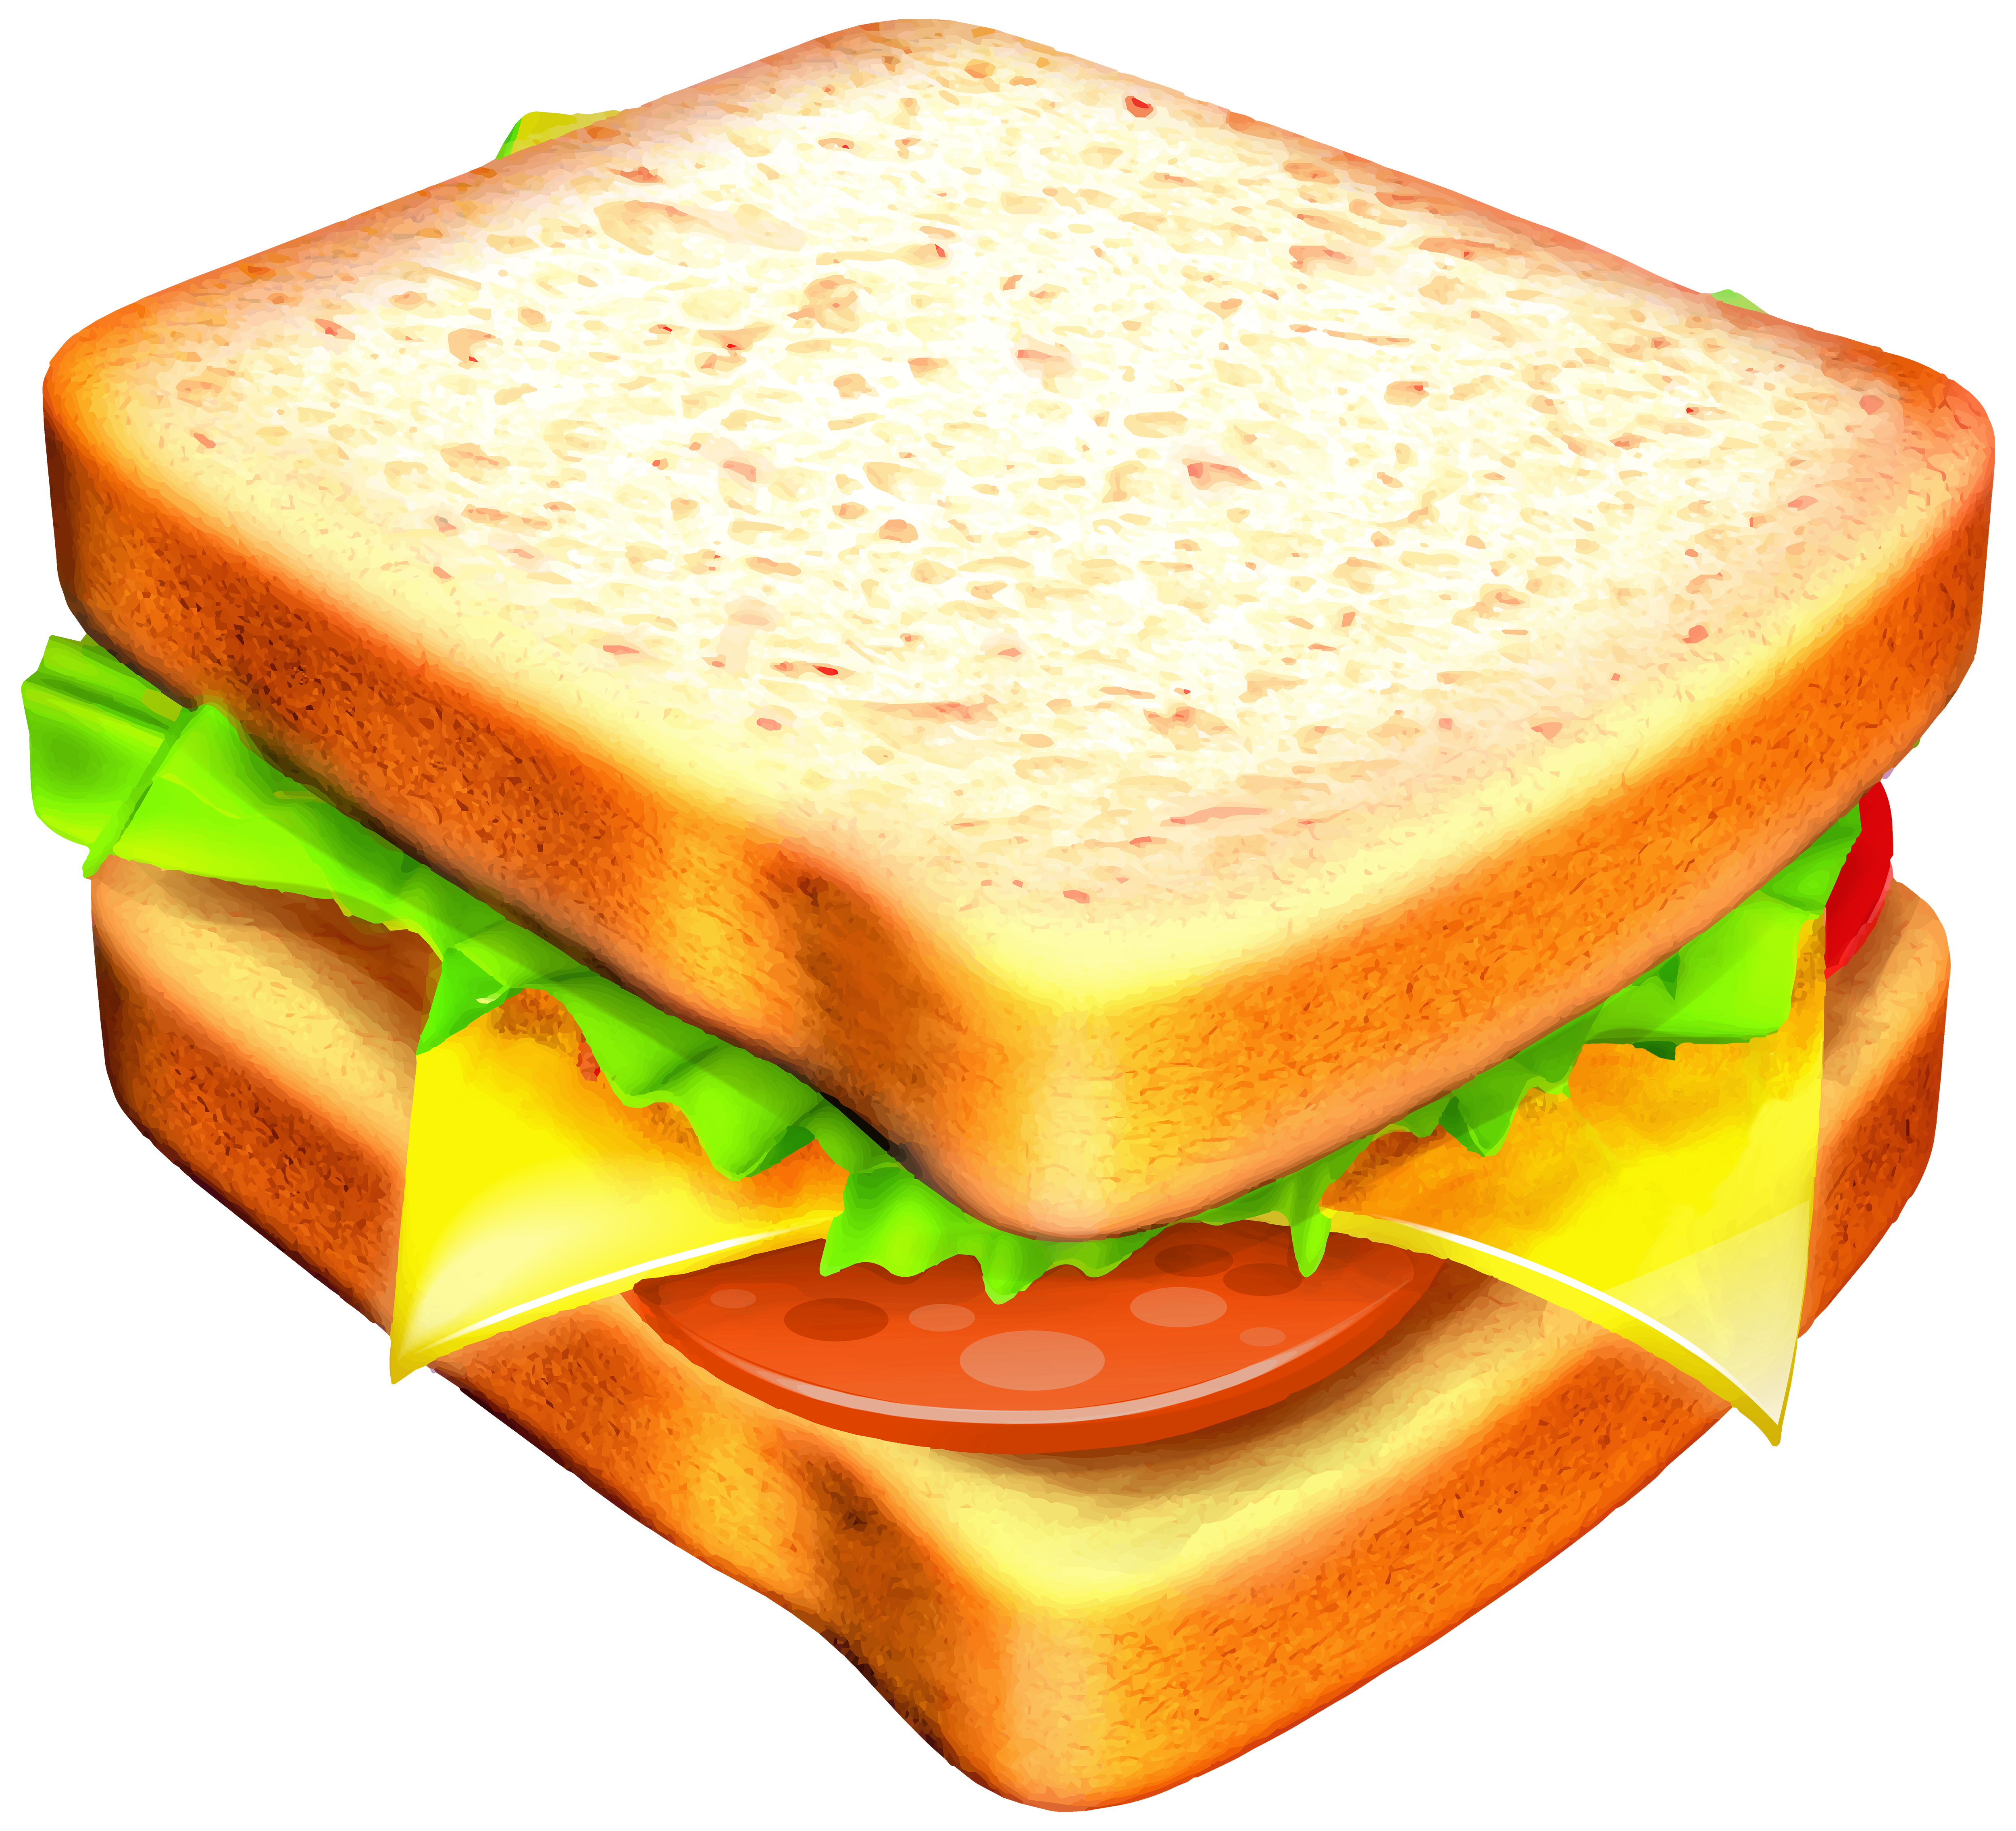 Sandwich Transparent PNG Clipart Image